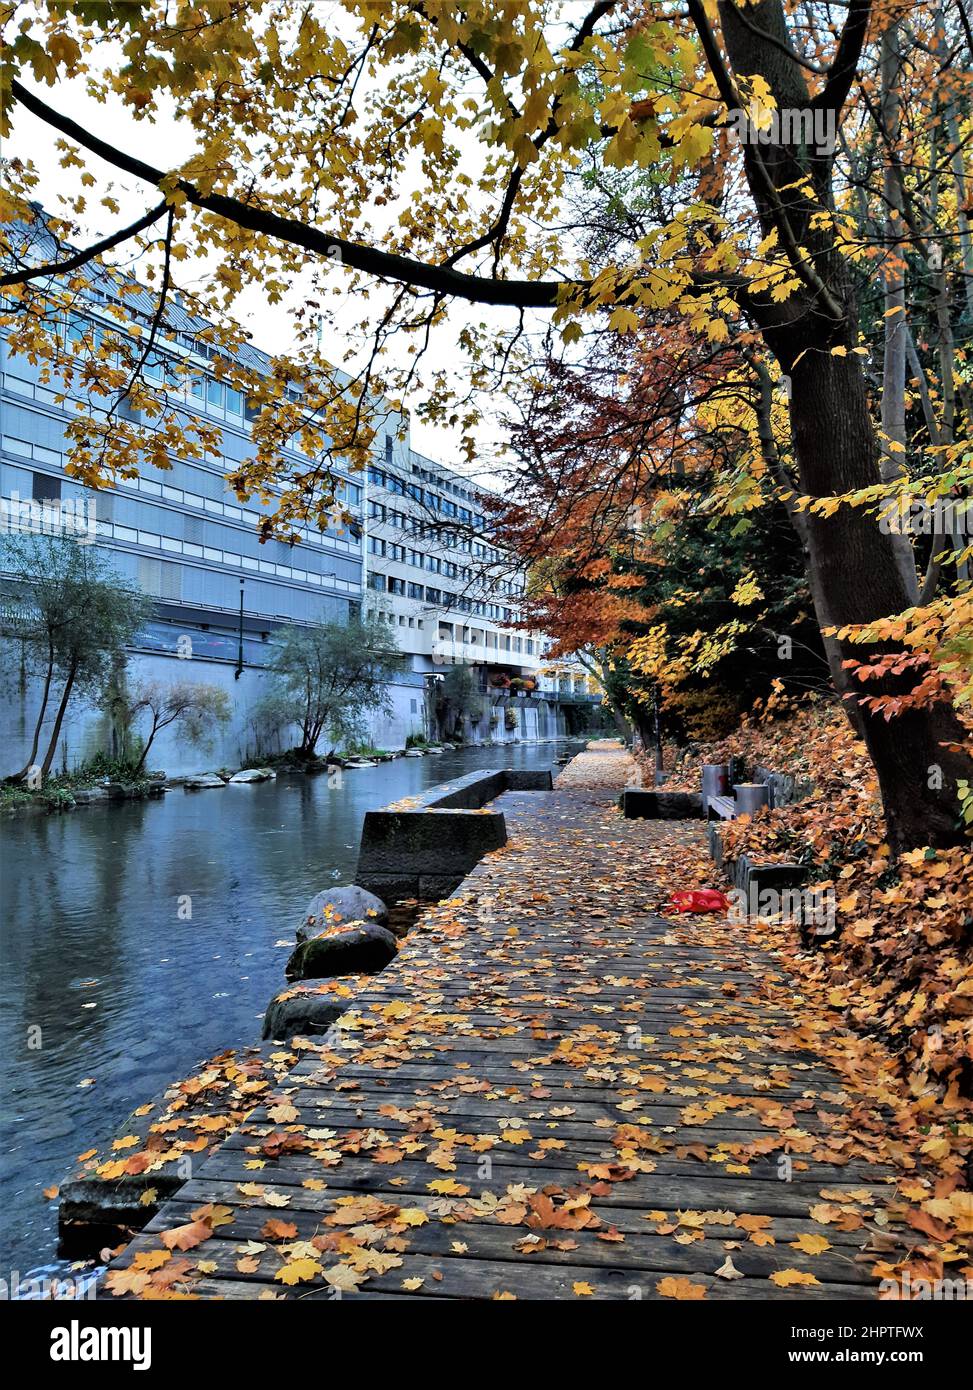 Schanzengraben un jour de pluie (Zurich, Suisse). Feuilles automnales sur une promenade au bord de la rivière. Scène d'automne urbain Banque D'Images